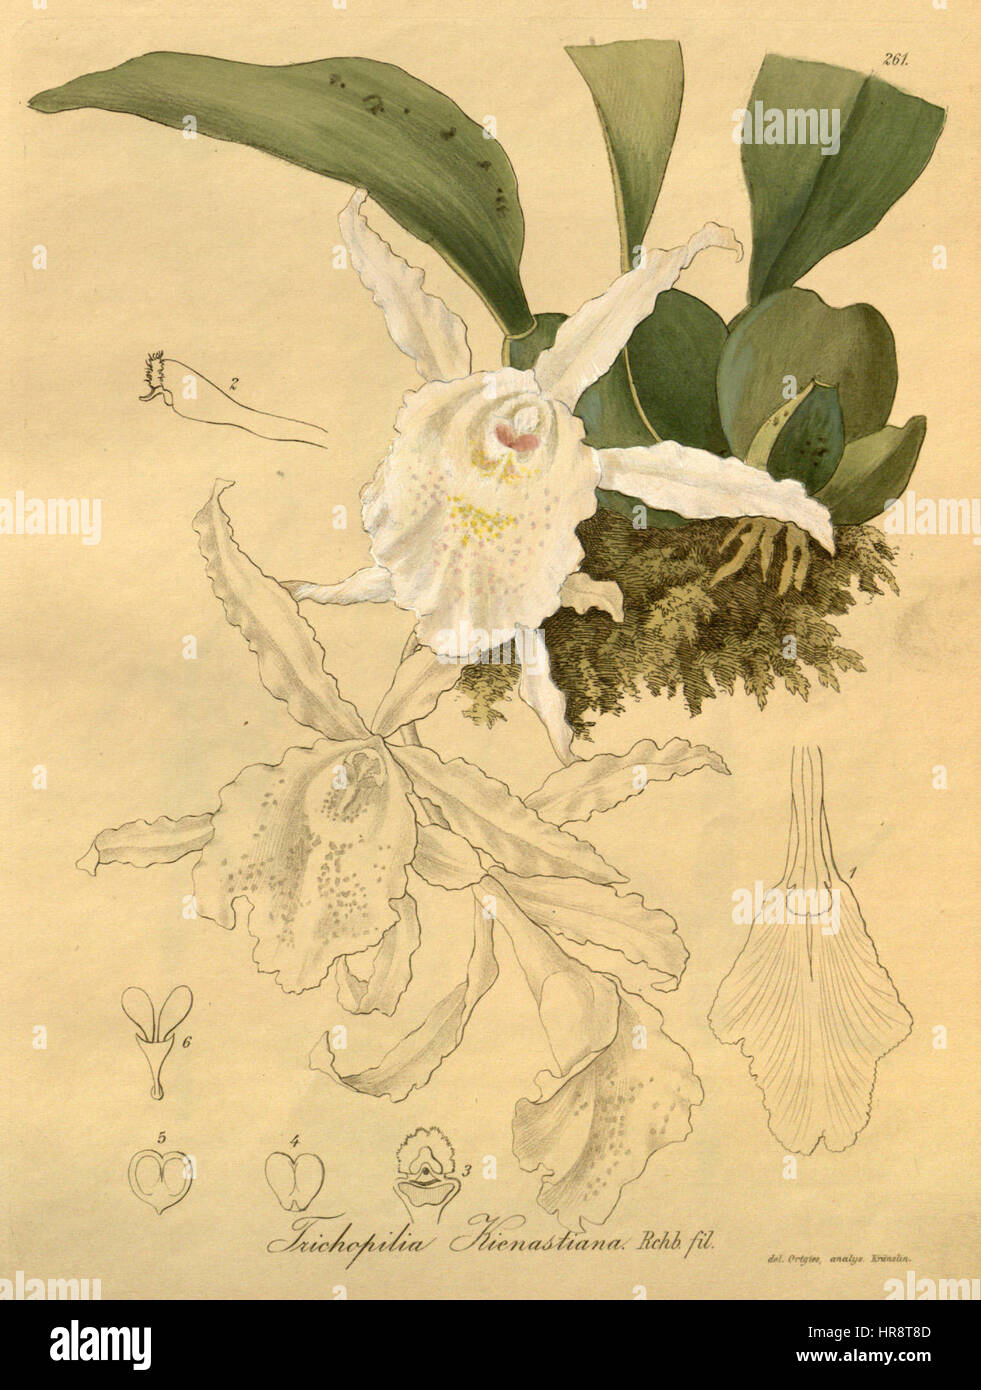 Trichopilia suavis (as Trichopilia kienastiana) - Xenia 3-261 (1893) Stock Photo